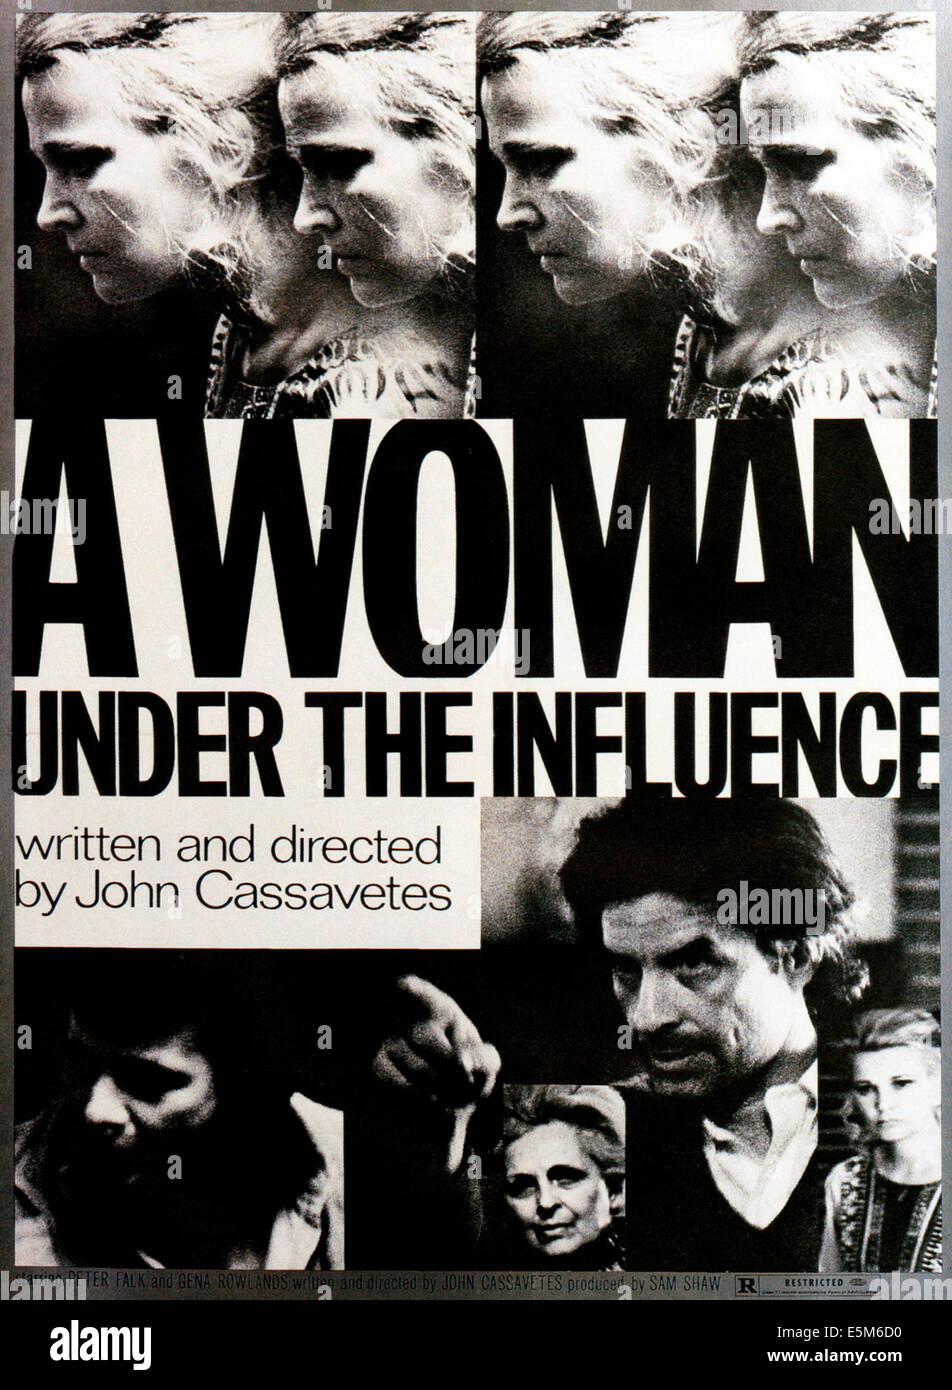 A WOMAN UNDER THE INFLUENCE, Peter Falk (left), director John